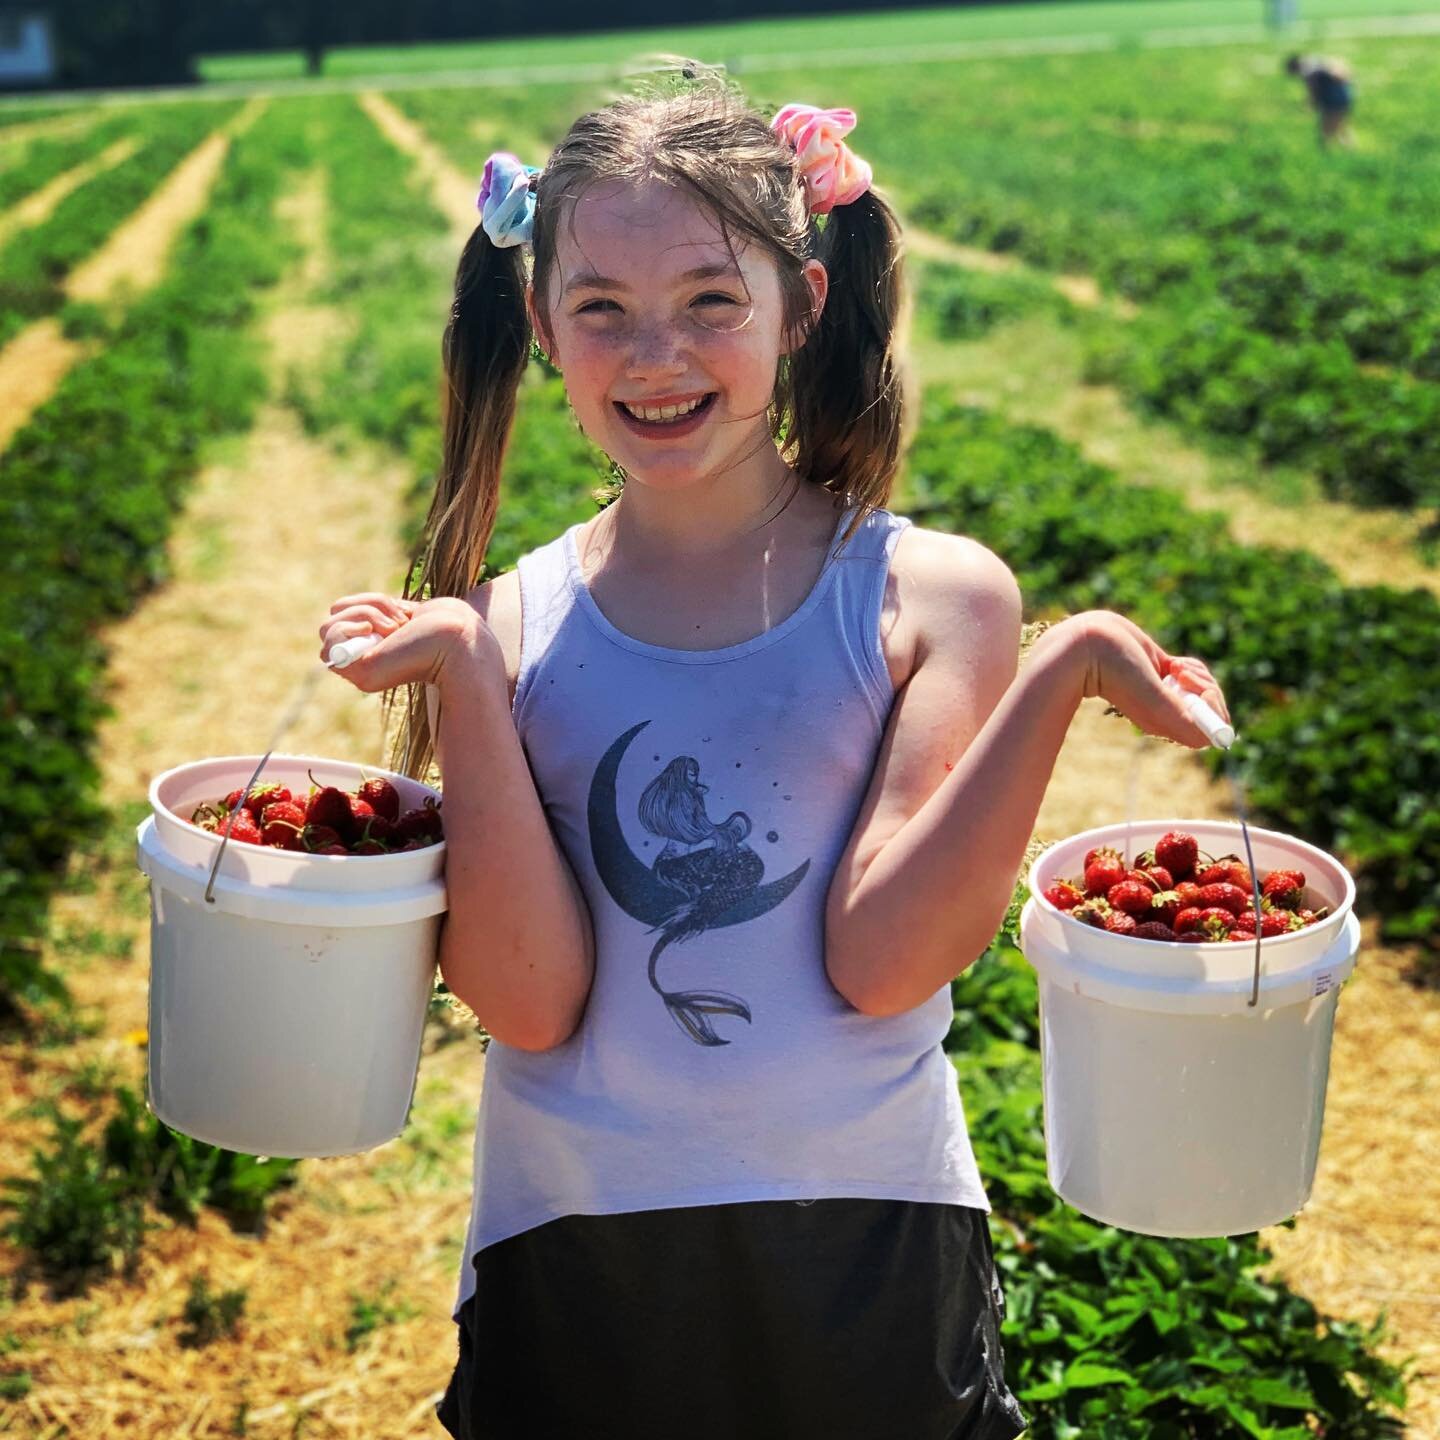 Buckets &lsquo;o YUM! 🍓 #pickingstrawberries #summerfun #puremichigan #citygirlcoralie #strawberrypicking